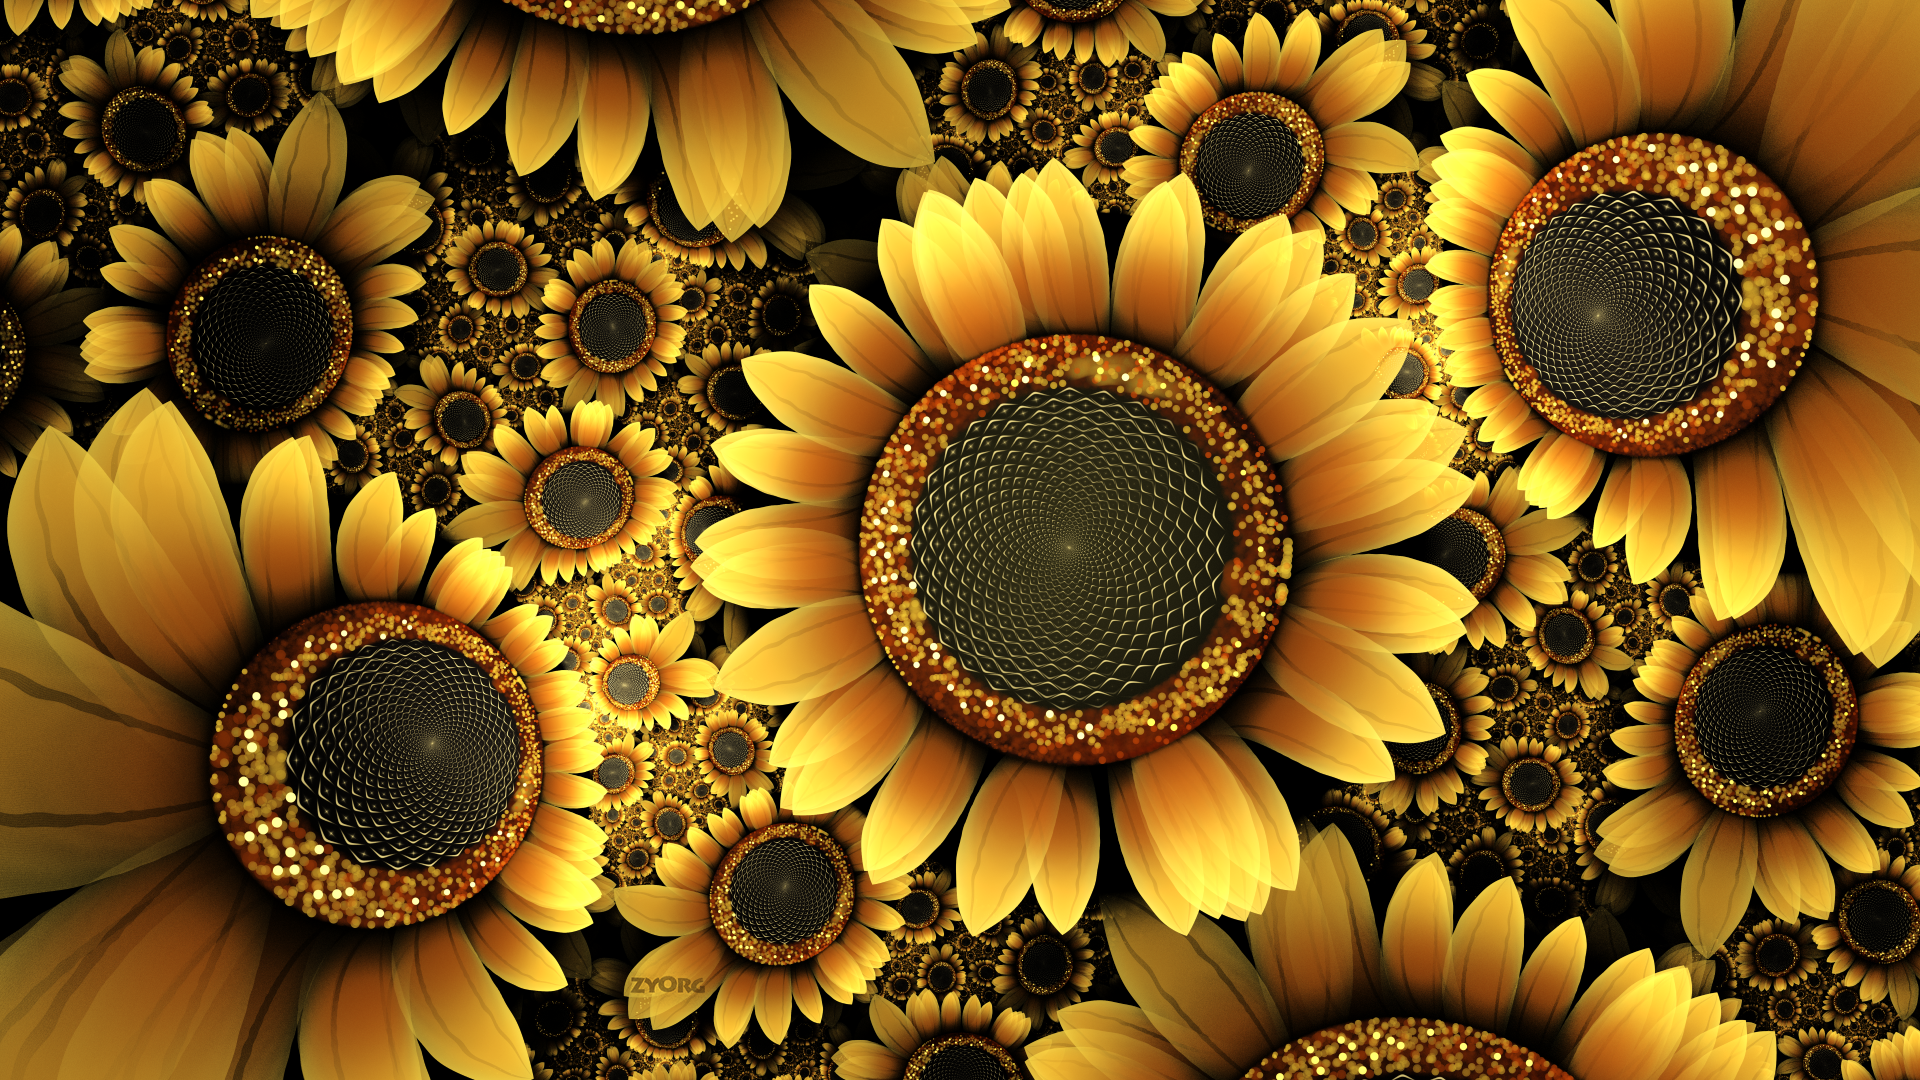 Sunflower by zy0rg on DeviantArt